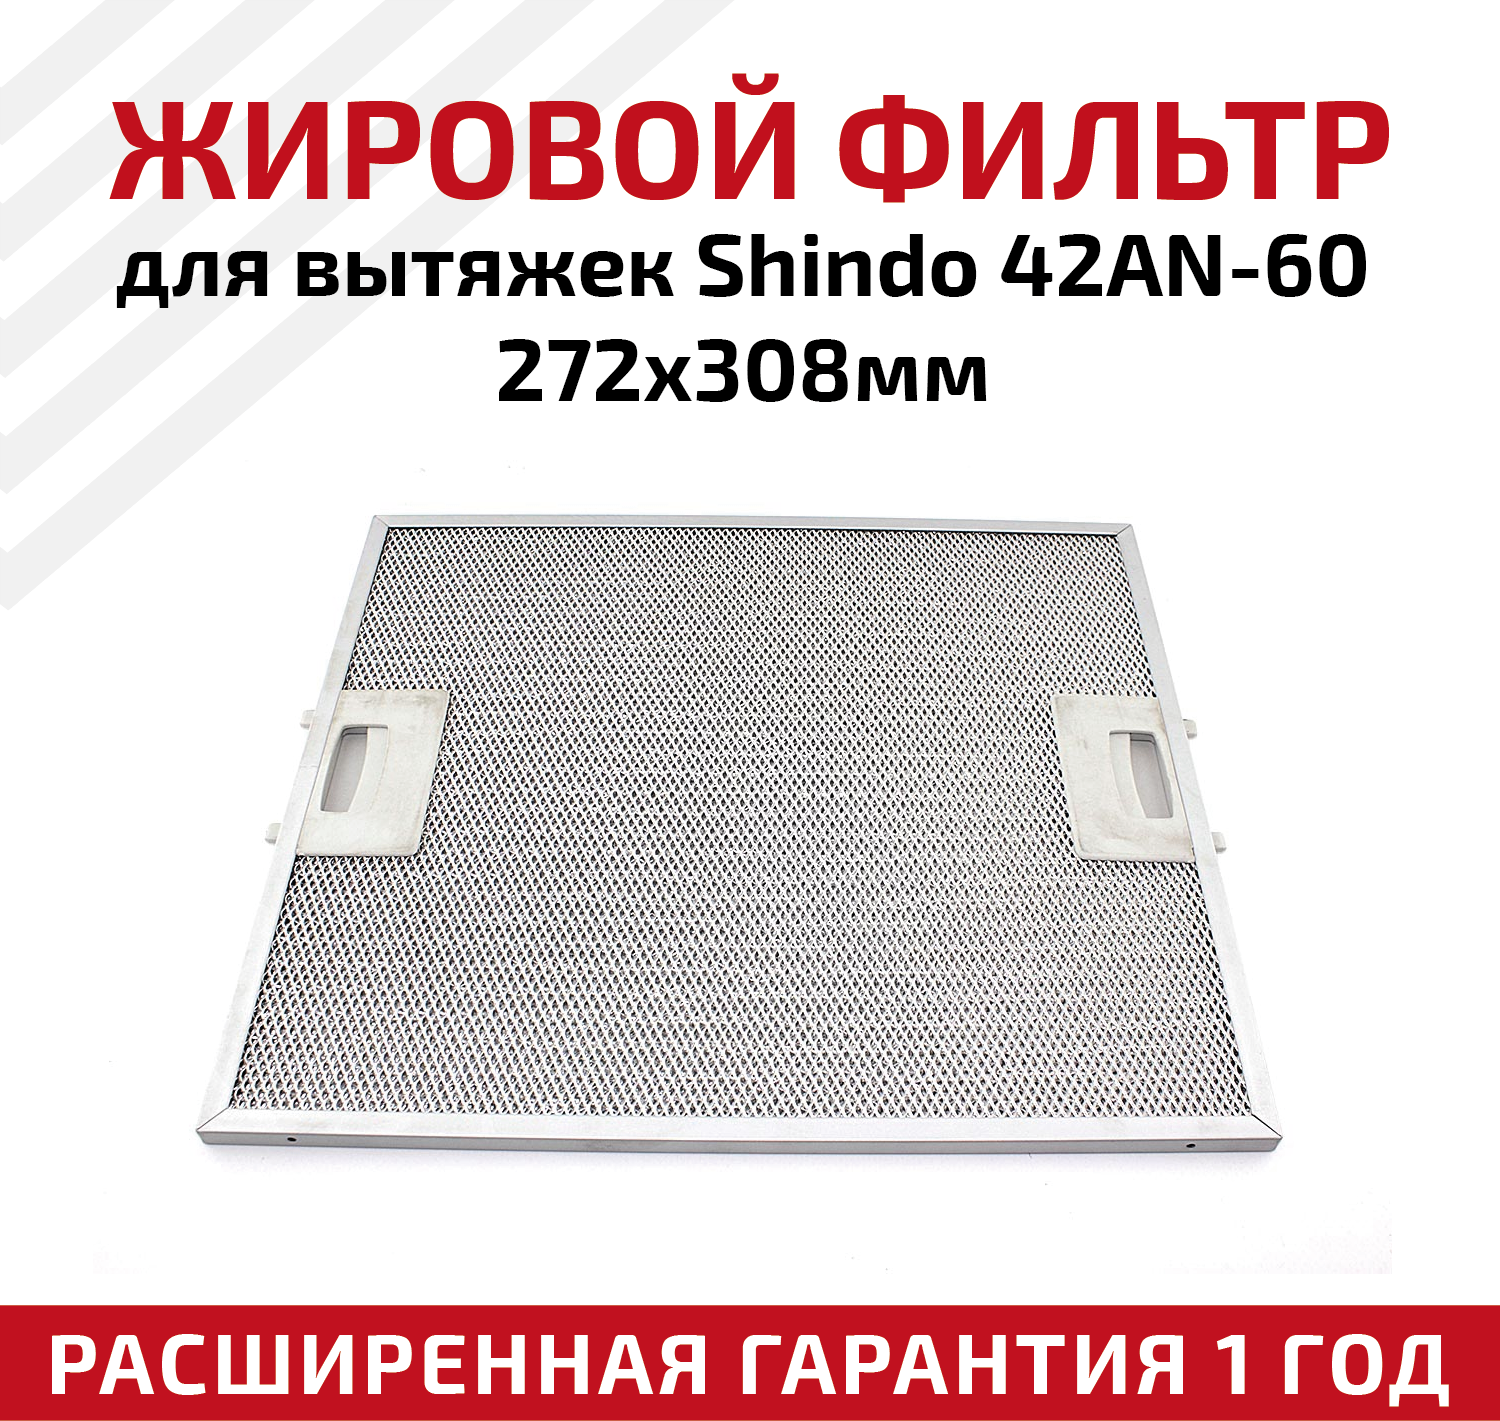 Жировой фильтр (кассета) алюминиевый (металлический) рамочный 42AN-60 для вытяжек Shindo многоразовый 272х308мм